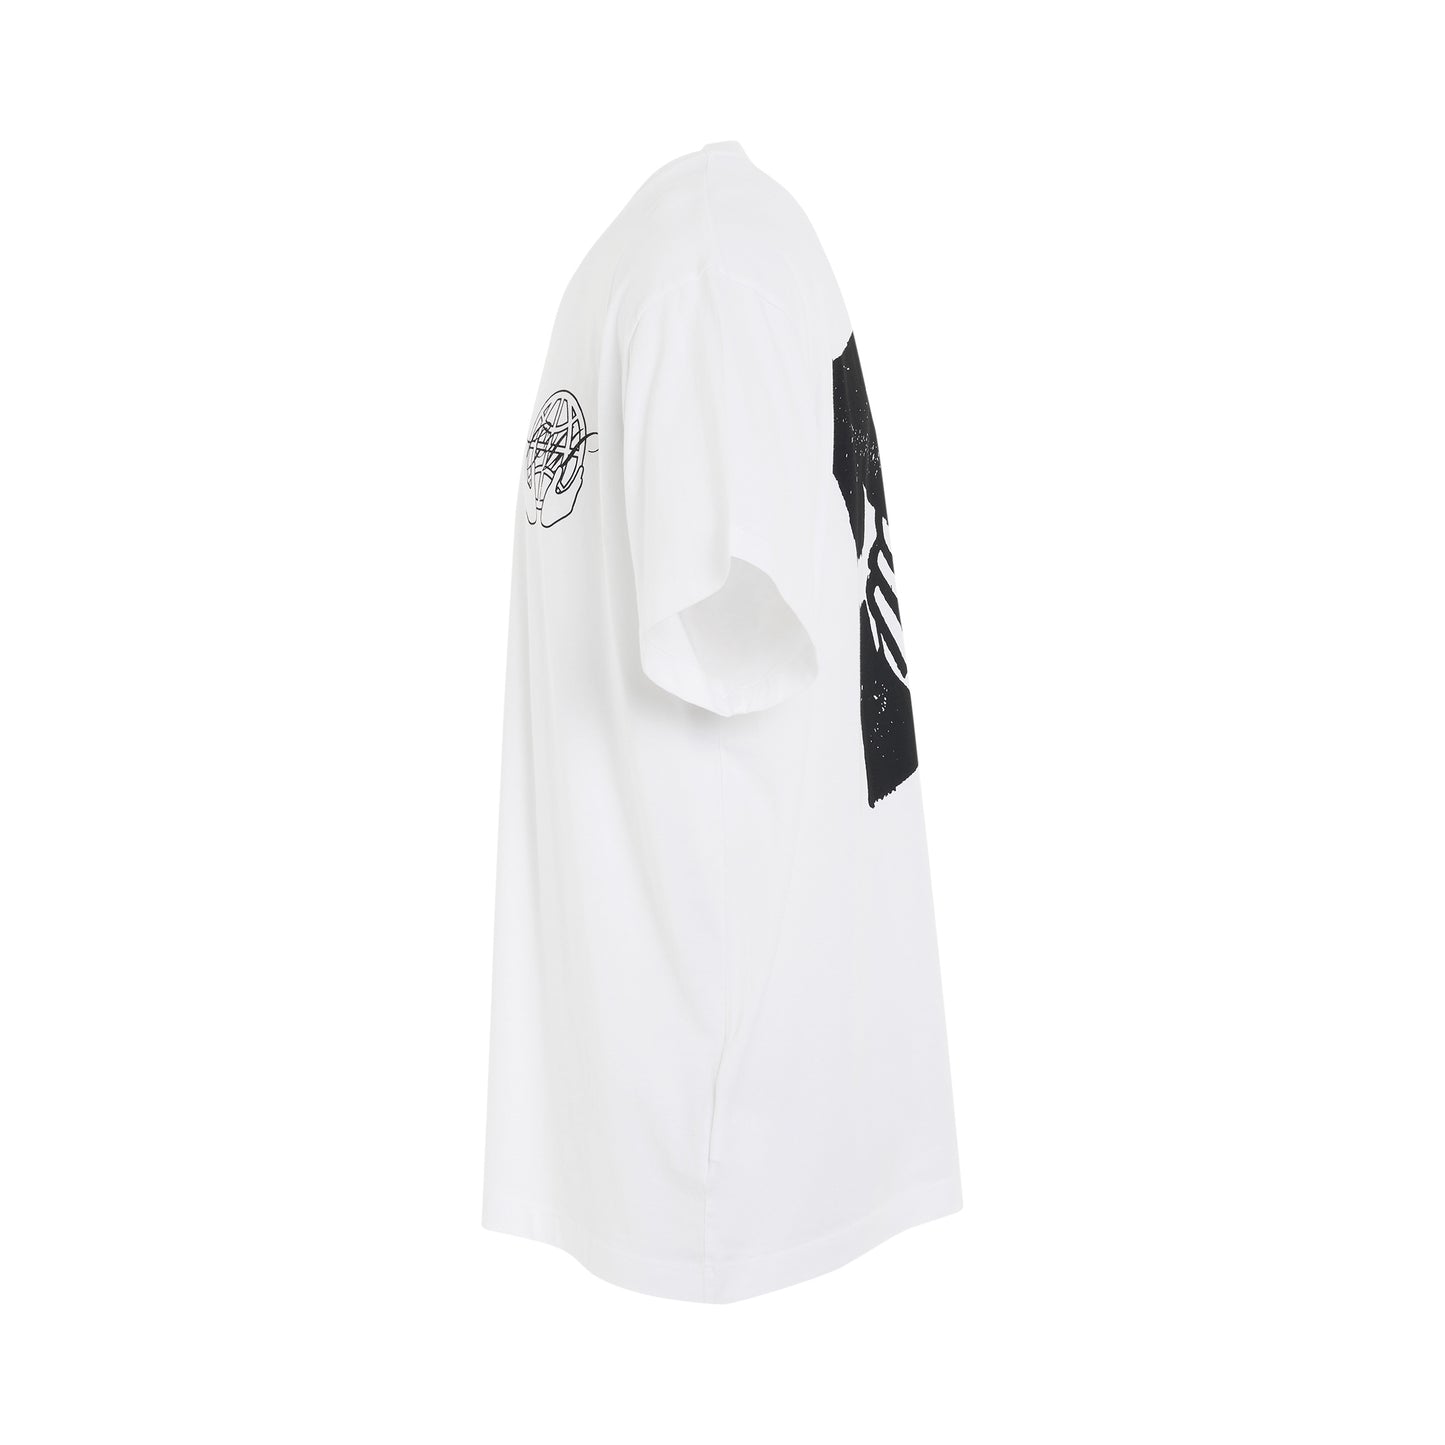 Hand Arrow Oversized Short Sleeve T-Shirt in White/Black